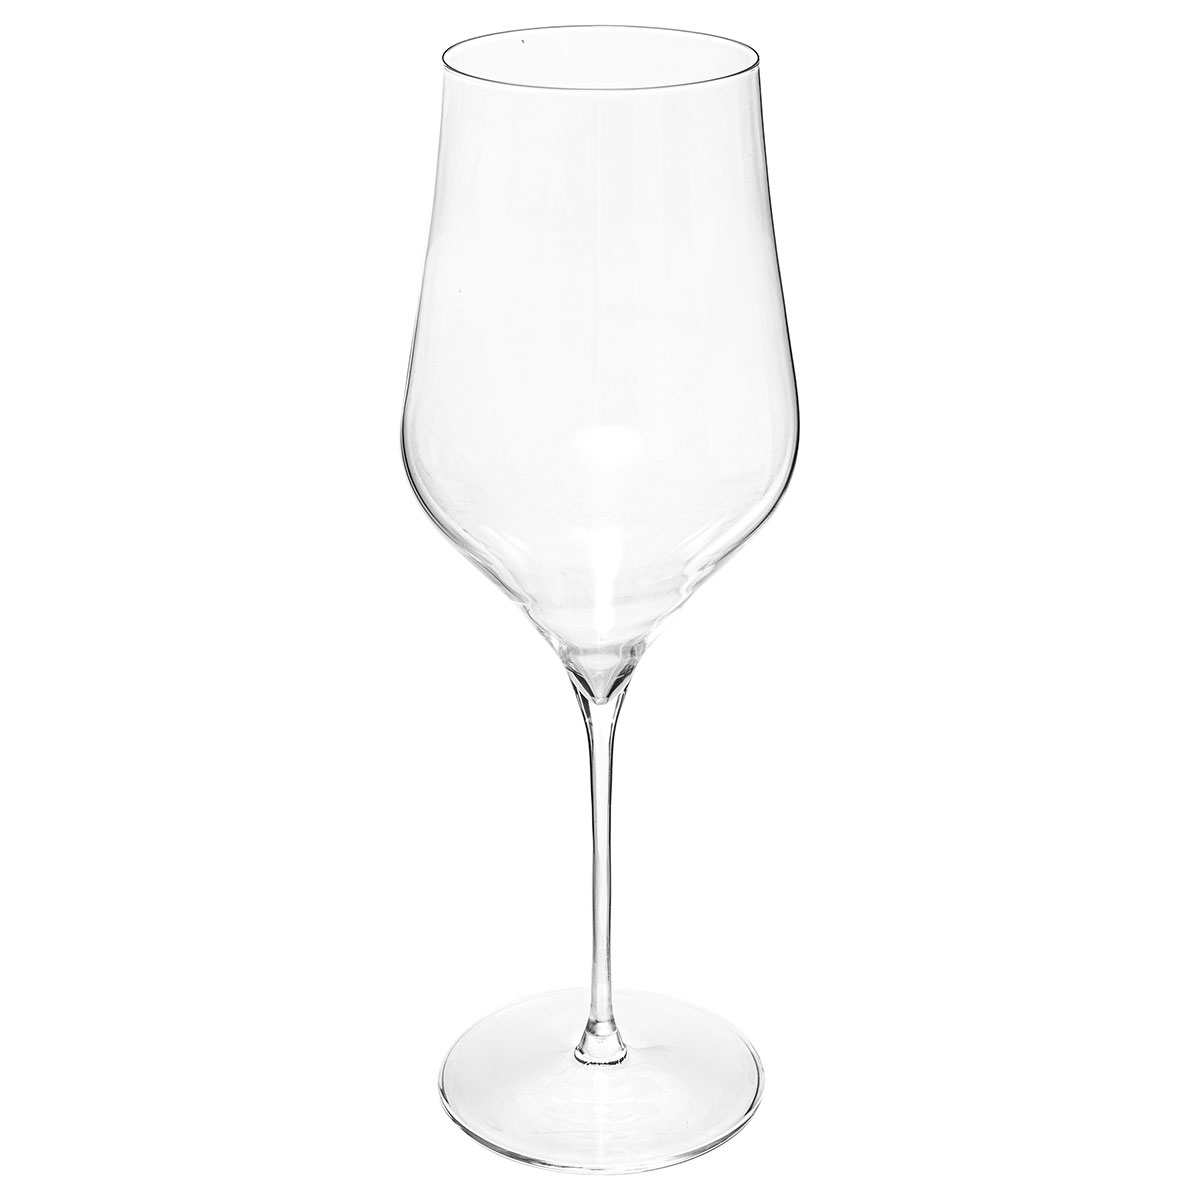 Ποτήρια Κρασιού Κολωνάτα 740ml (Σετ 2τμχ) S-D Rhone 154902